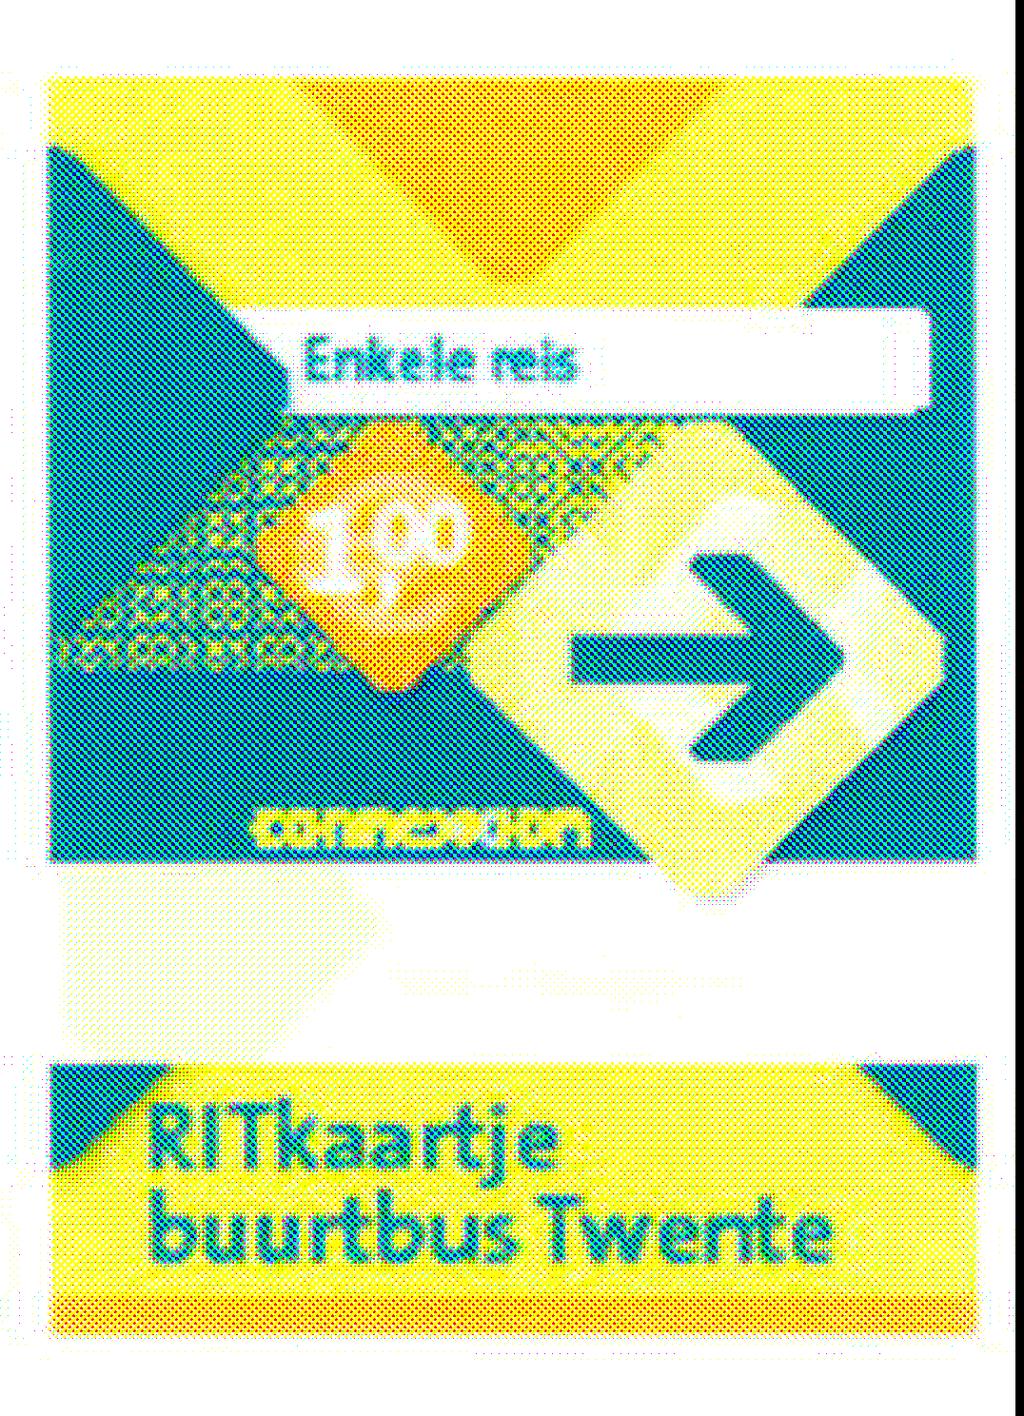 15 10. Tarieven In september 2011 heeft de Regio Twente besloten om per 1 oktober nieuwe tarieven in te voeren op de Twentse buurtbussen.